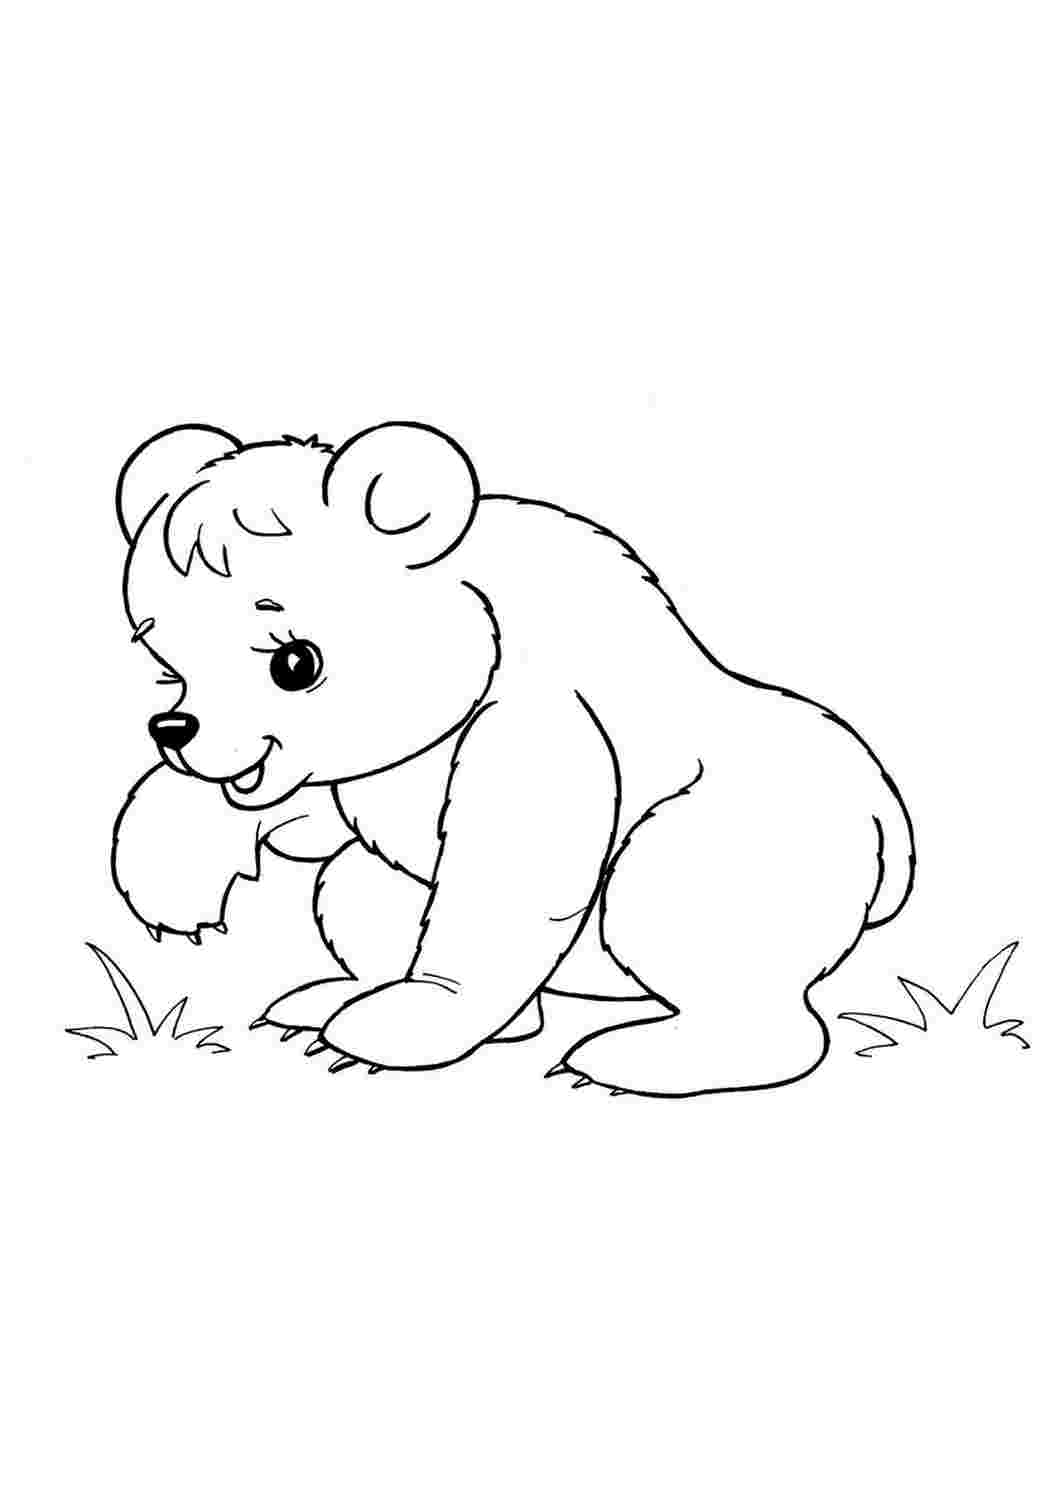 Распечатать раскраску дикие животные. Раскраска. Медвежонок. Медведь раскраска. Раскраски животных для детей. Медведь раскраска для детей.